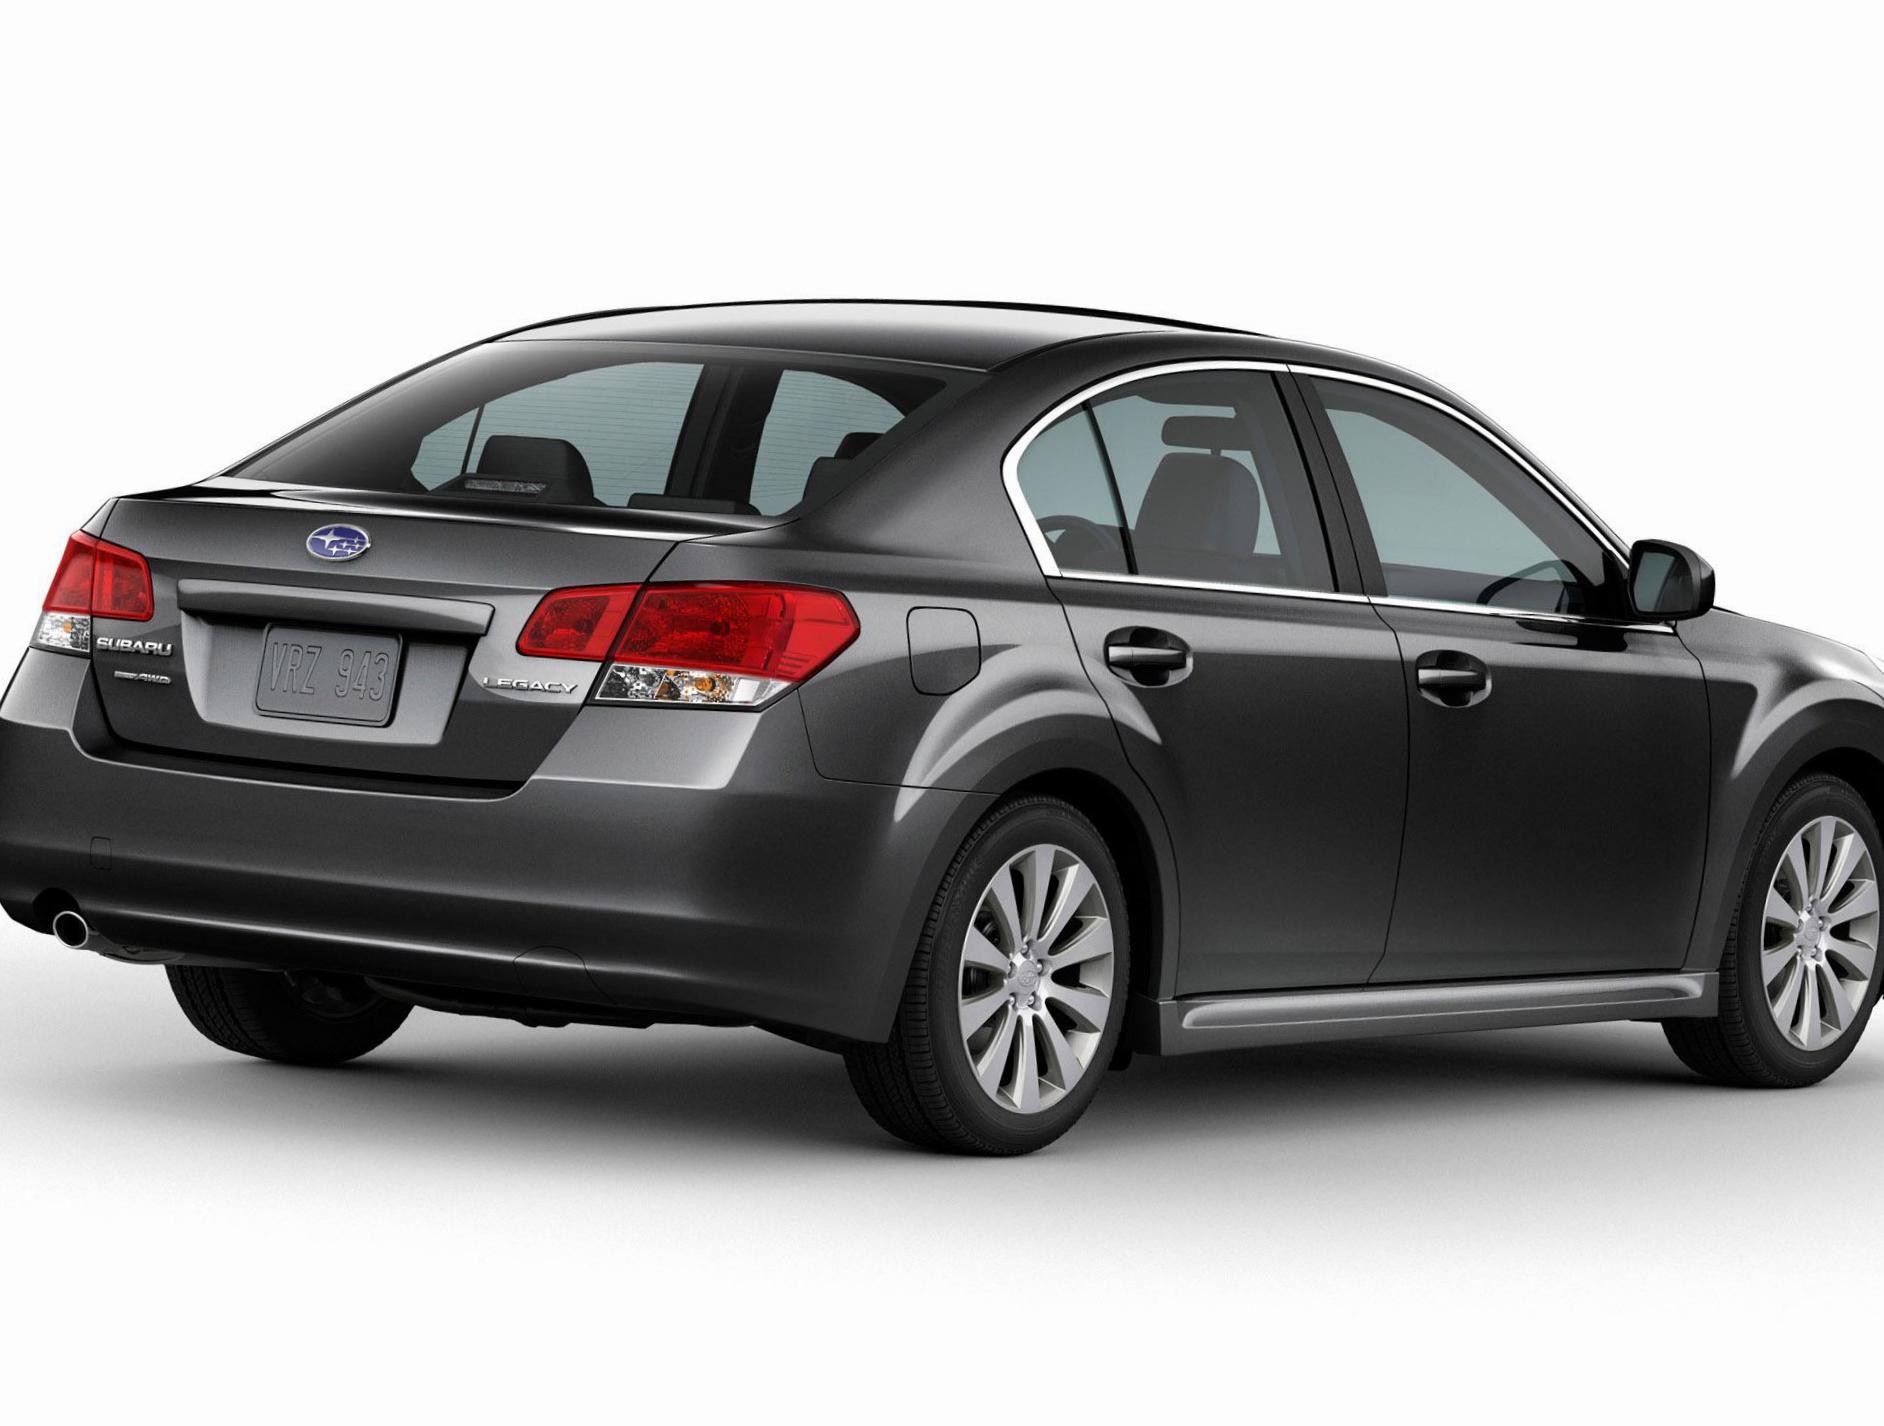 Legacy Subaru model liftback